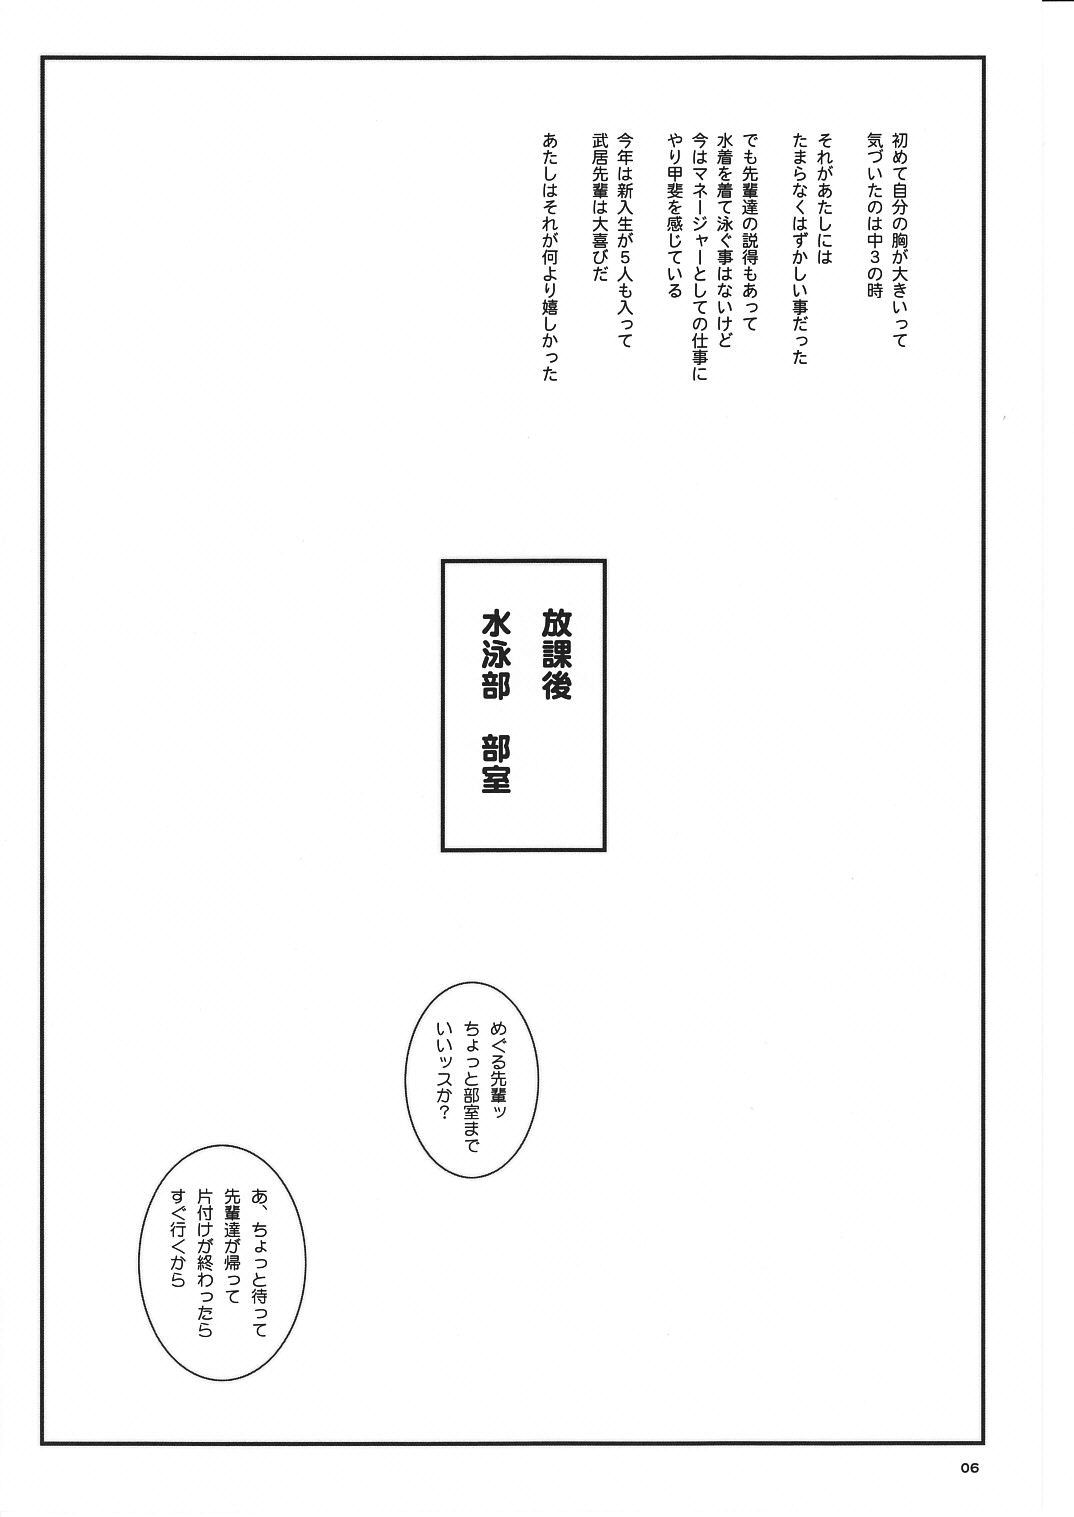 [サークル空想実験 (宗人)] 空想実験Vol.8 -初恋限定- (初恋限定。)